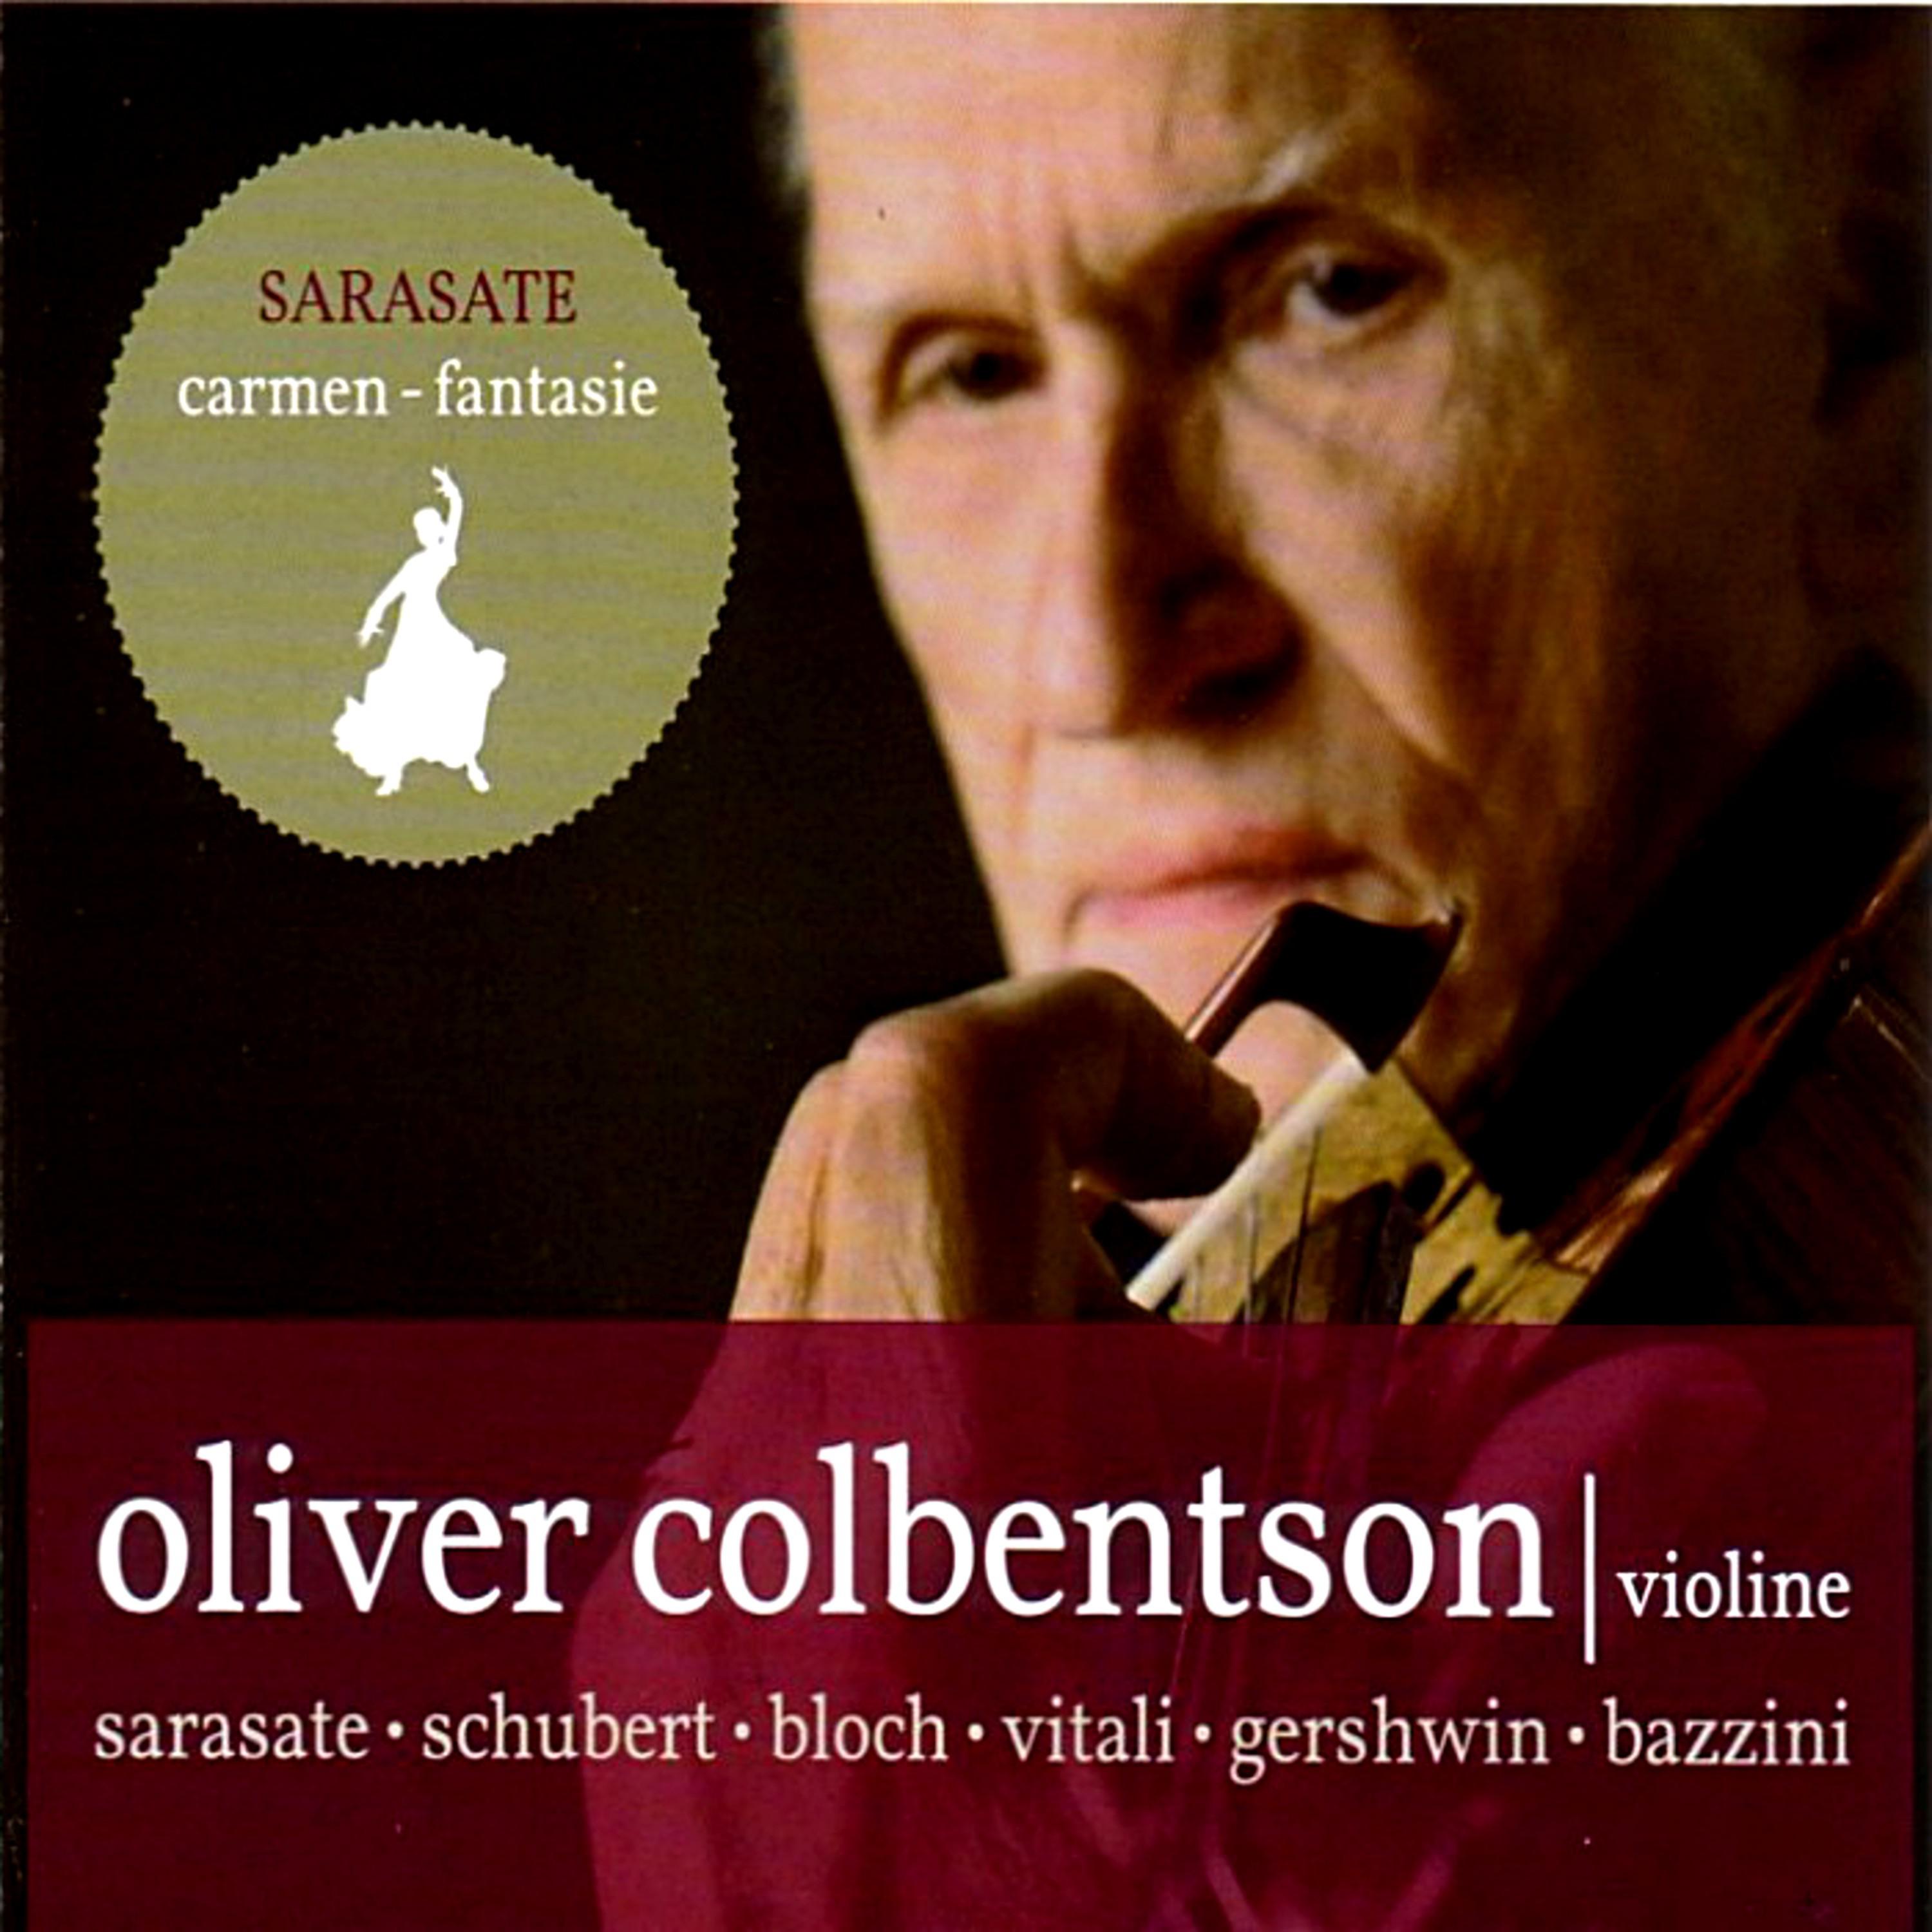 Oliver Colbentson